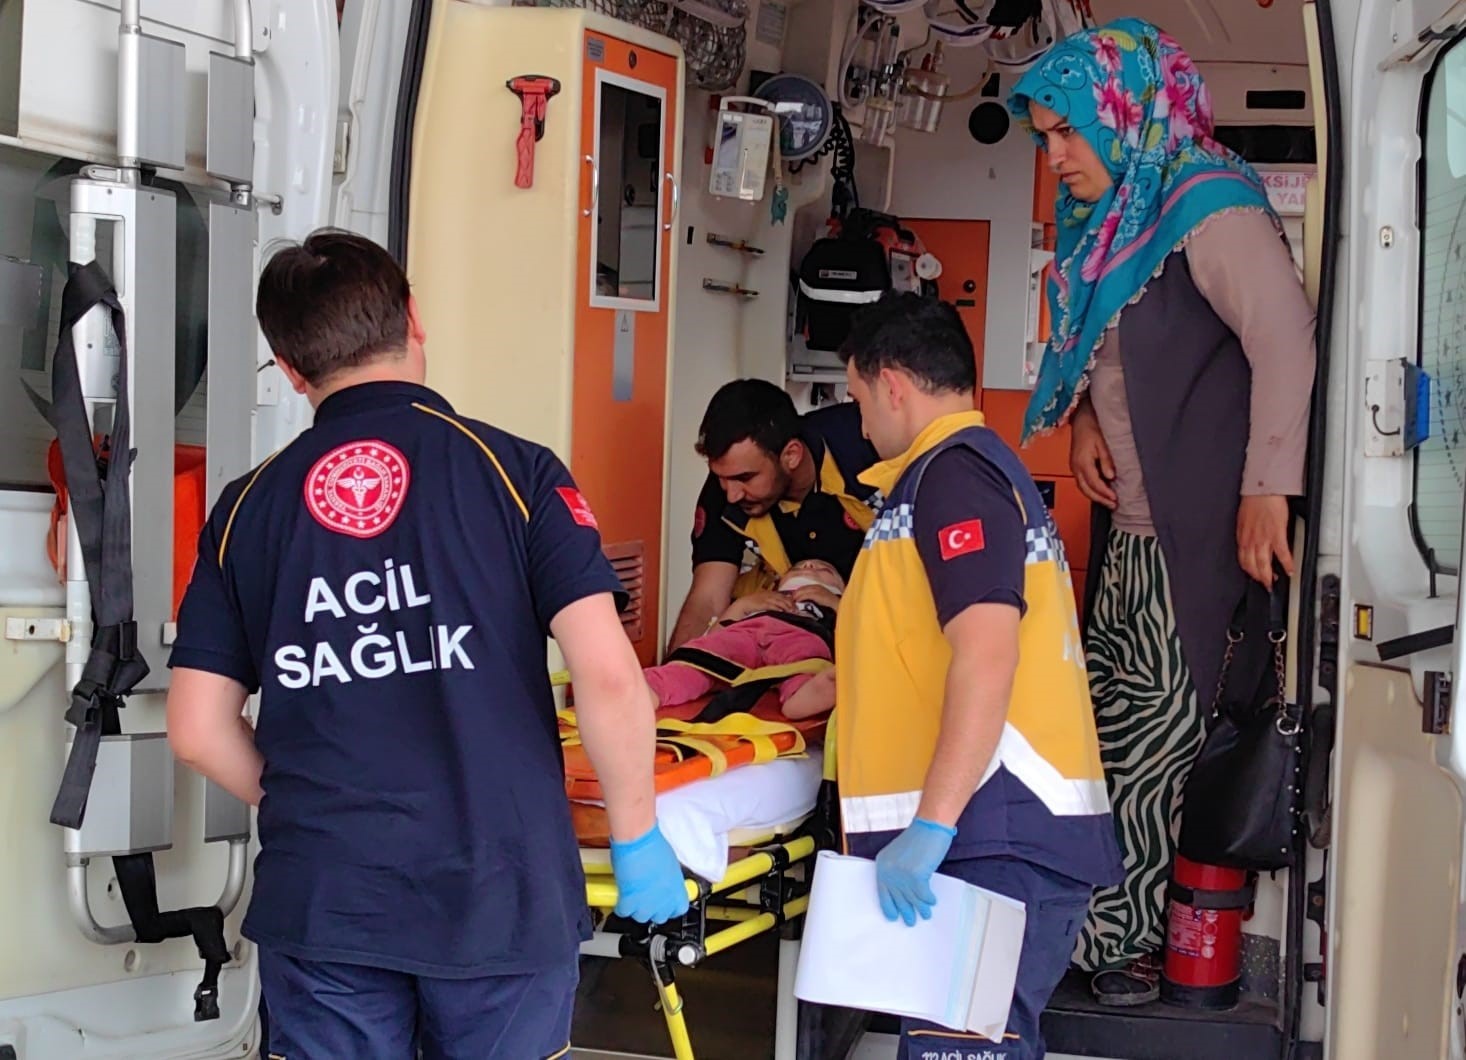 Bursa’da balkondan düşen bebek yaralandı